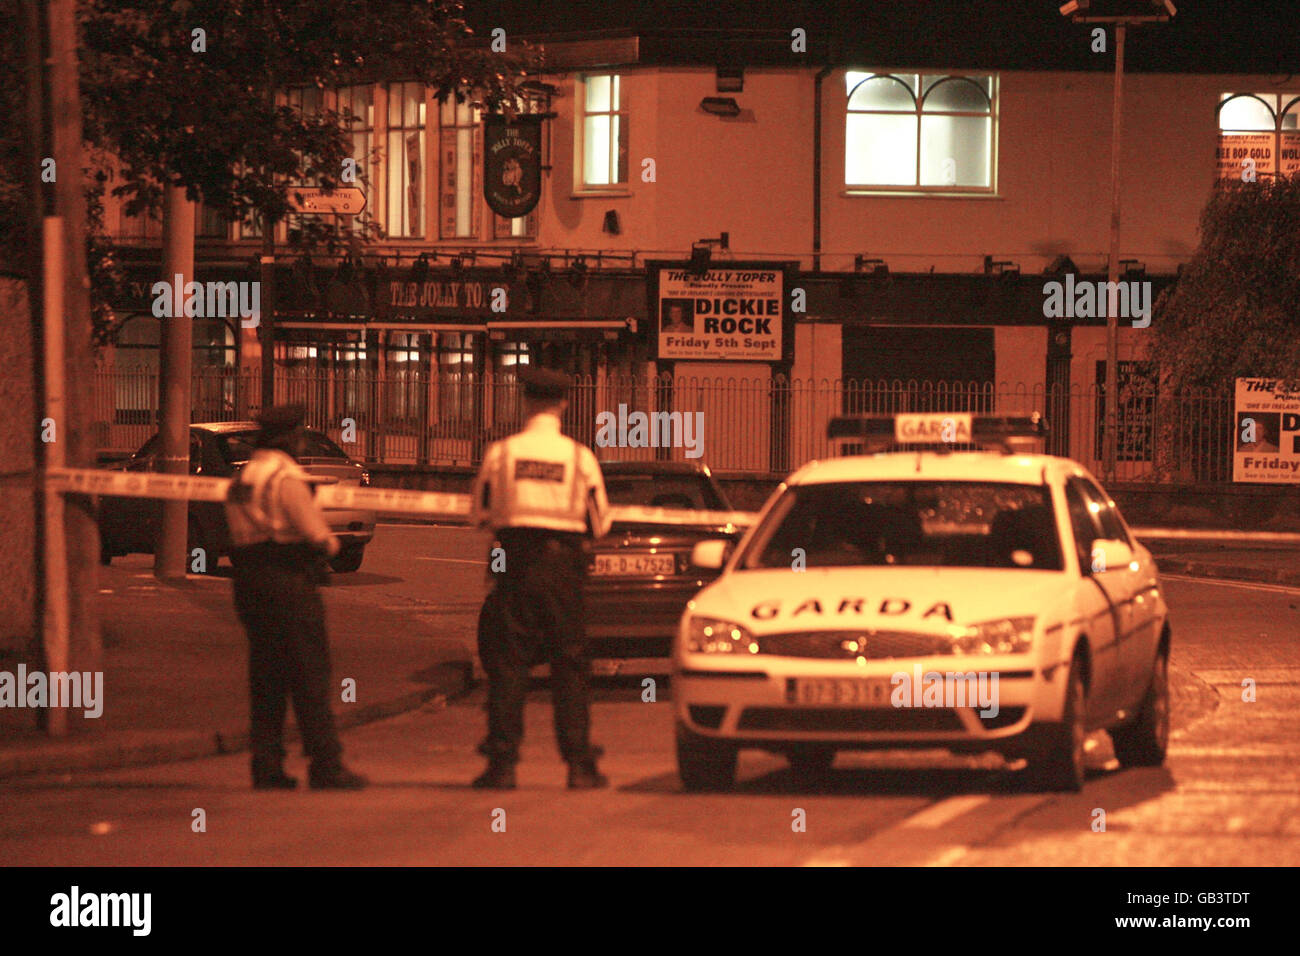 Garda-Offiziere am Schauplatz eines Doppelschießens in der Jolly Toper Bar in der Gegend von Finglas in Dublin, wo ein Mann erschossen und ein zweiter verletzt wurde, nachdem sie von maskierten Männern in einer Kneipe niedergeschossen wurden. Stockfoto